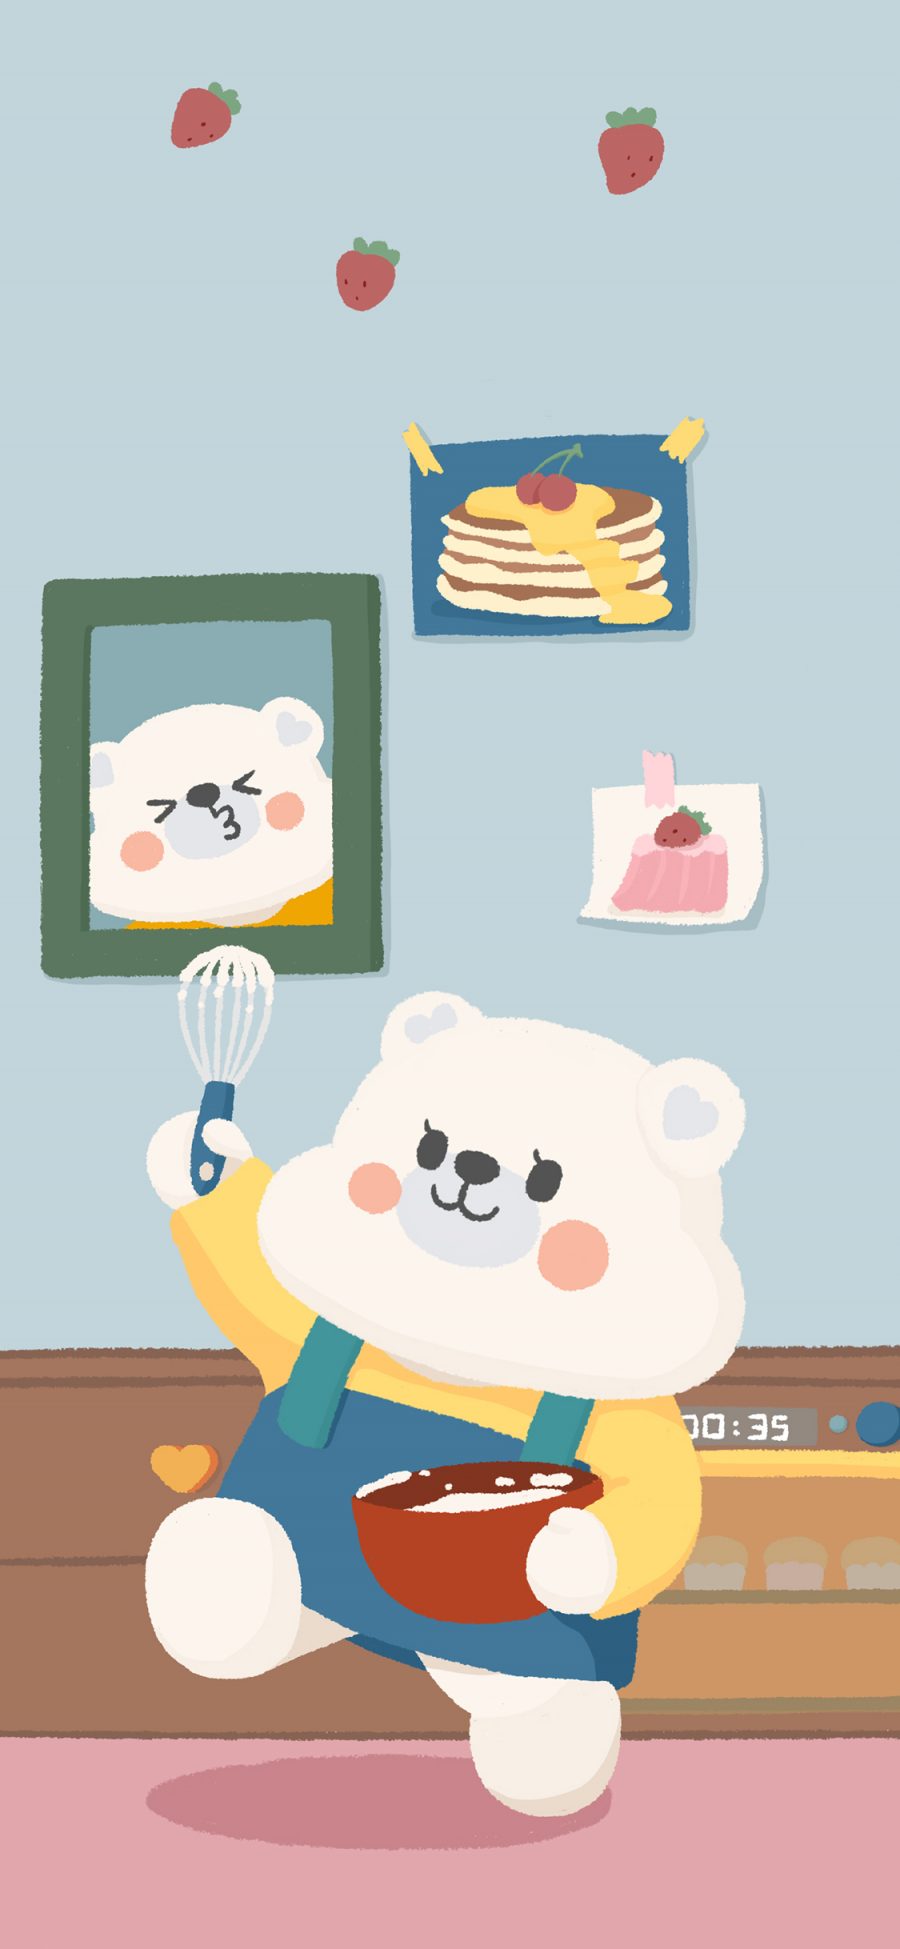 [2436×1125]熊 打蛋器 料理 蛋糕 可爱 苹果手机动漫壁纸图片